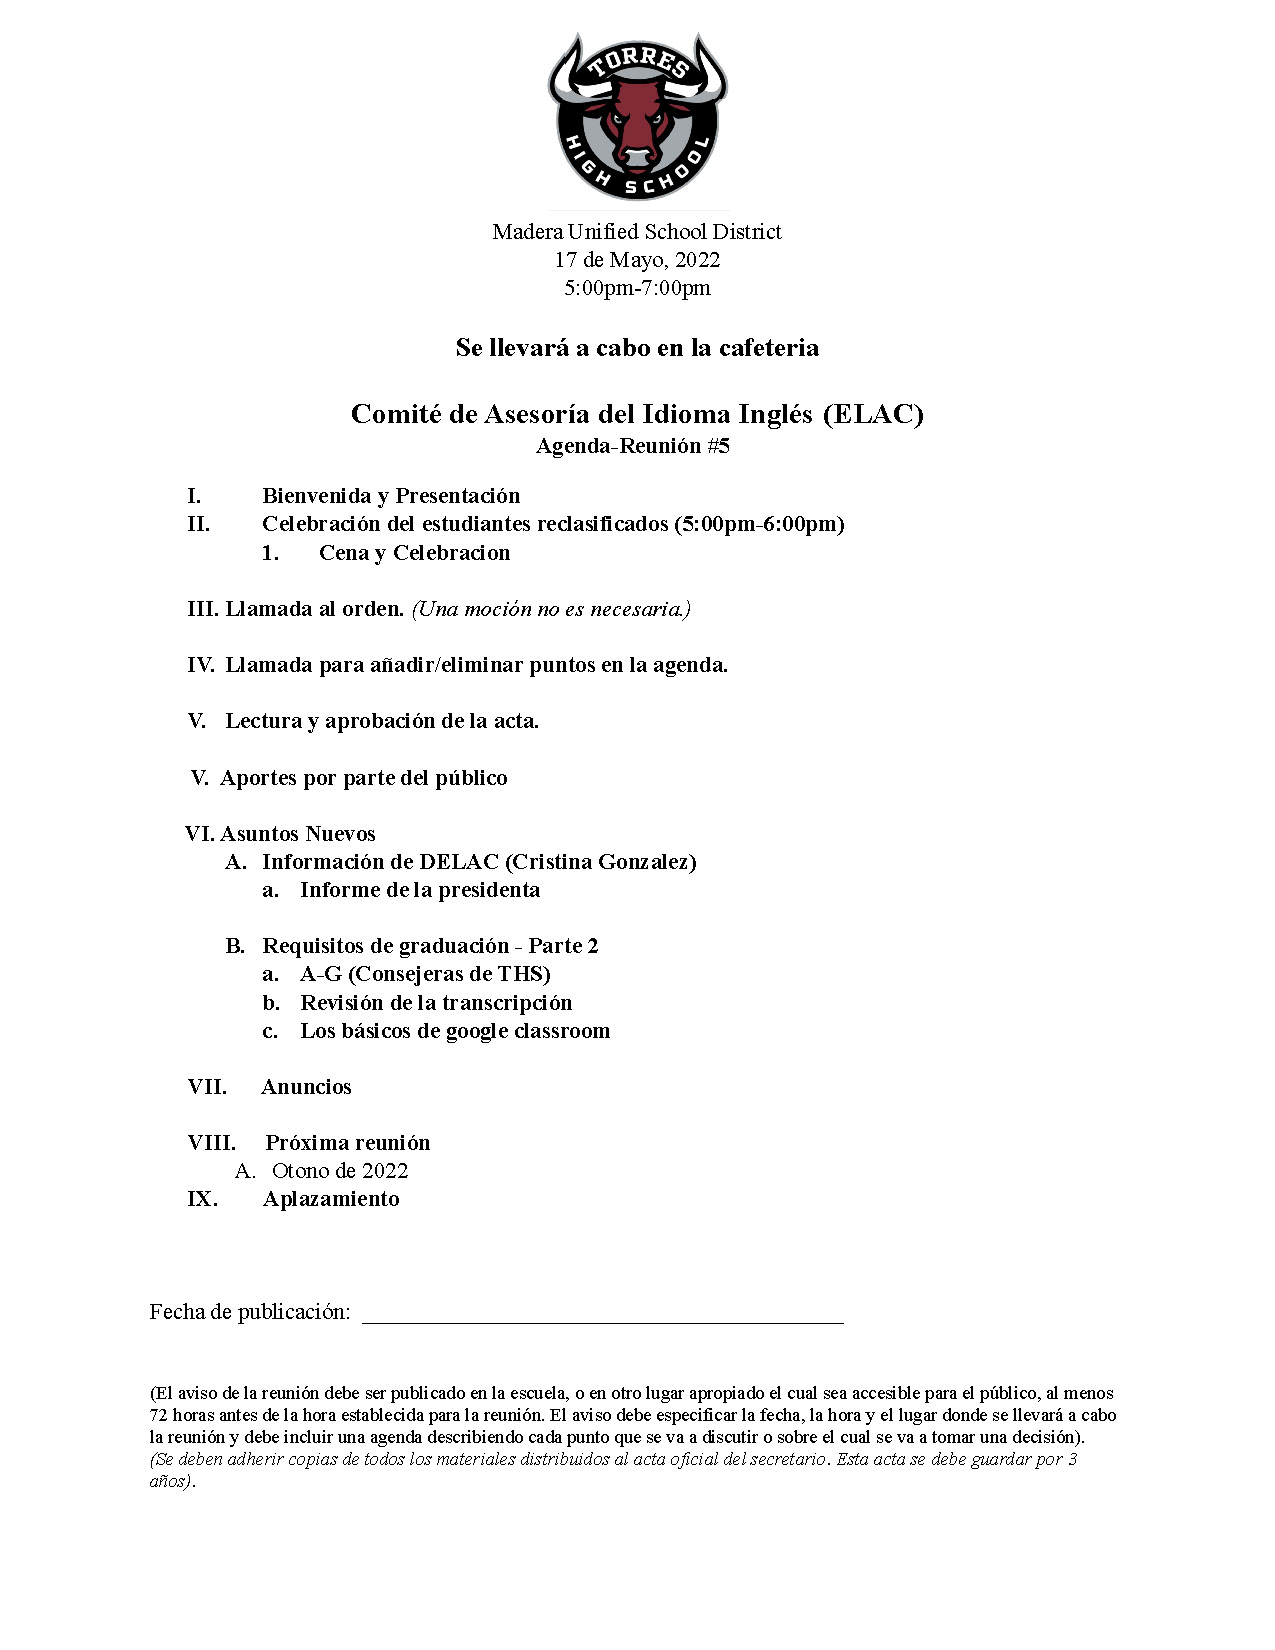 ELAC 5 Agenda